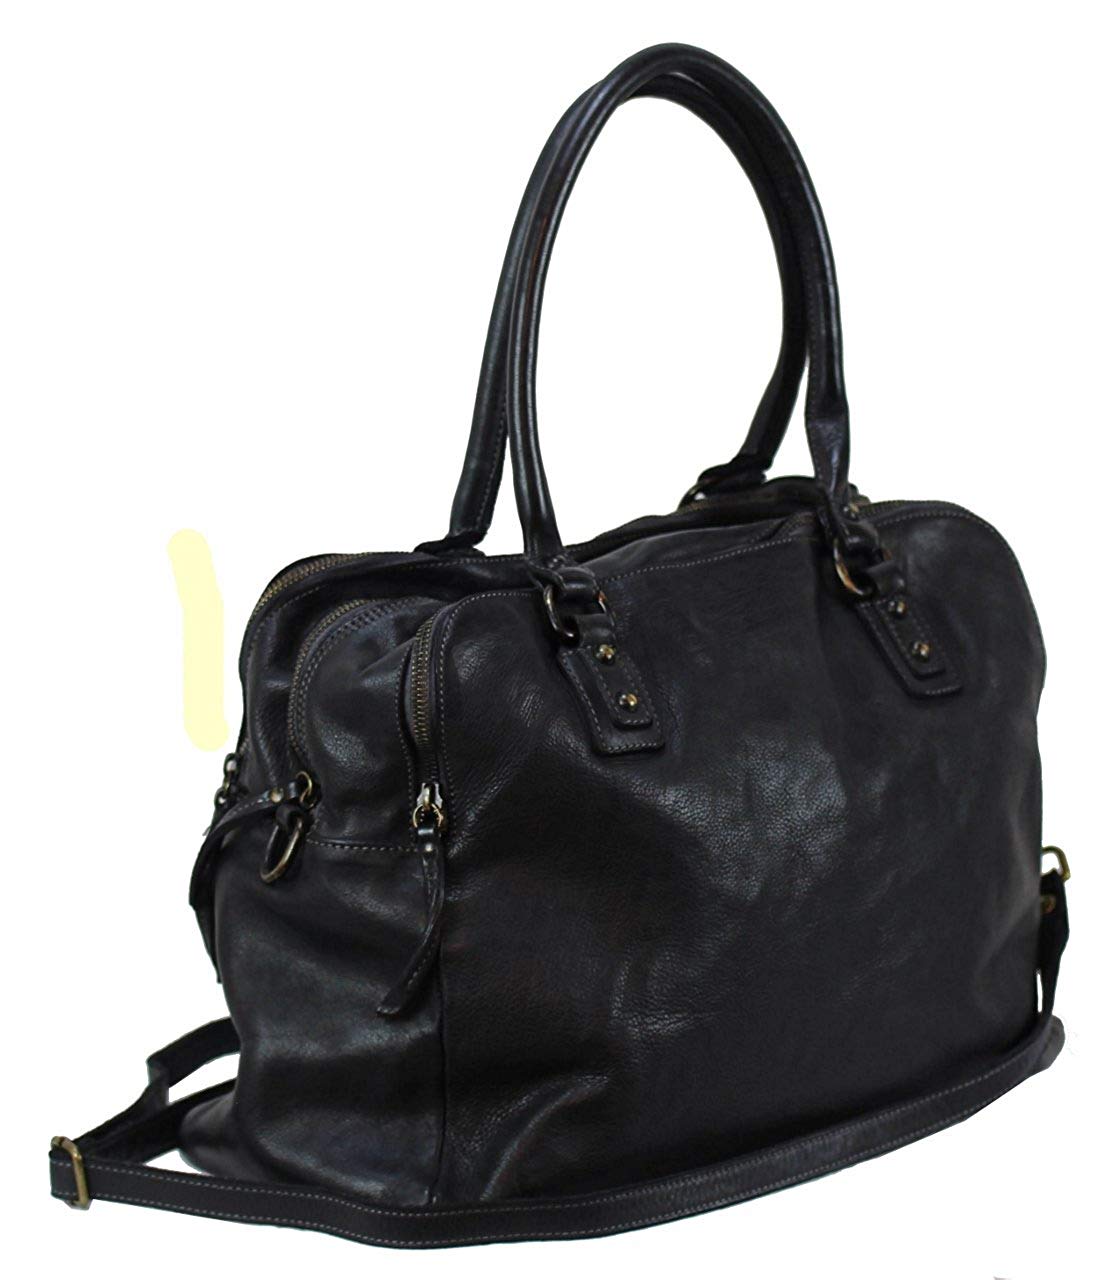 BZNA Bag Lue nero Italy Designer Messenger Damen Handtasche Schultertasche Tasche Leder Shopper Neu